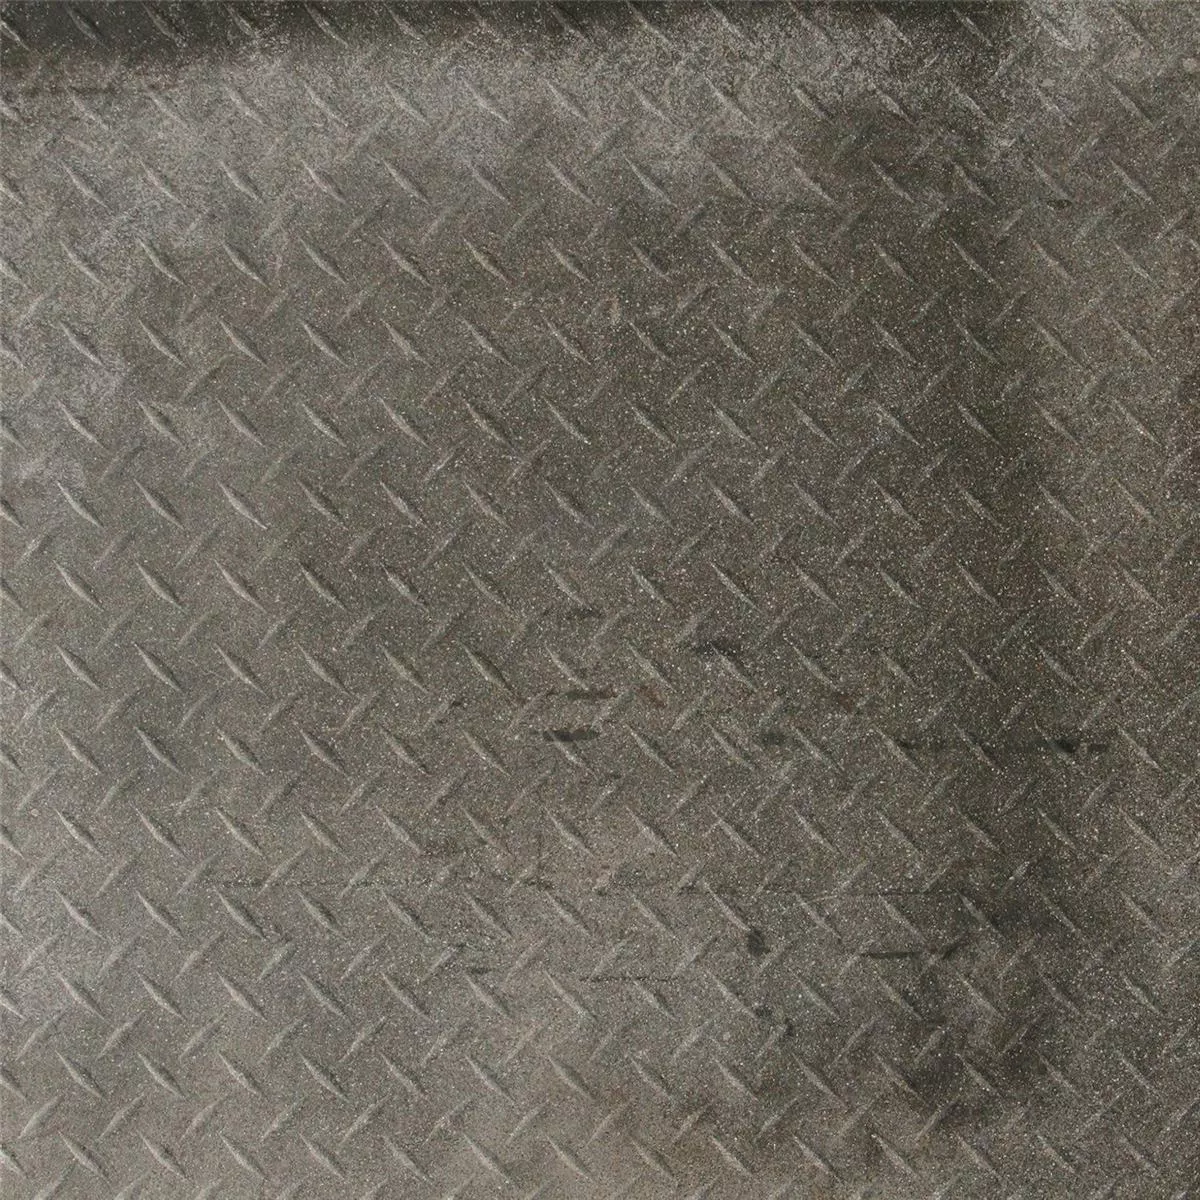 Πρότυπο Πλακάκια Δαπέδου Casablanca Ανθρακίτης Ουσία 60x60cm